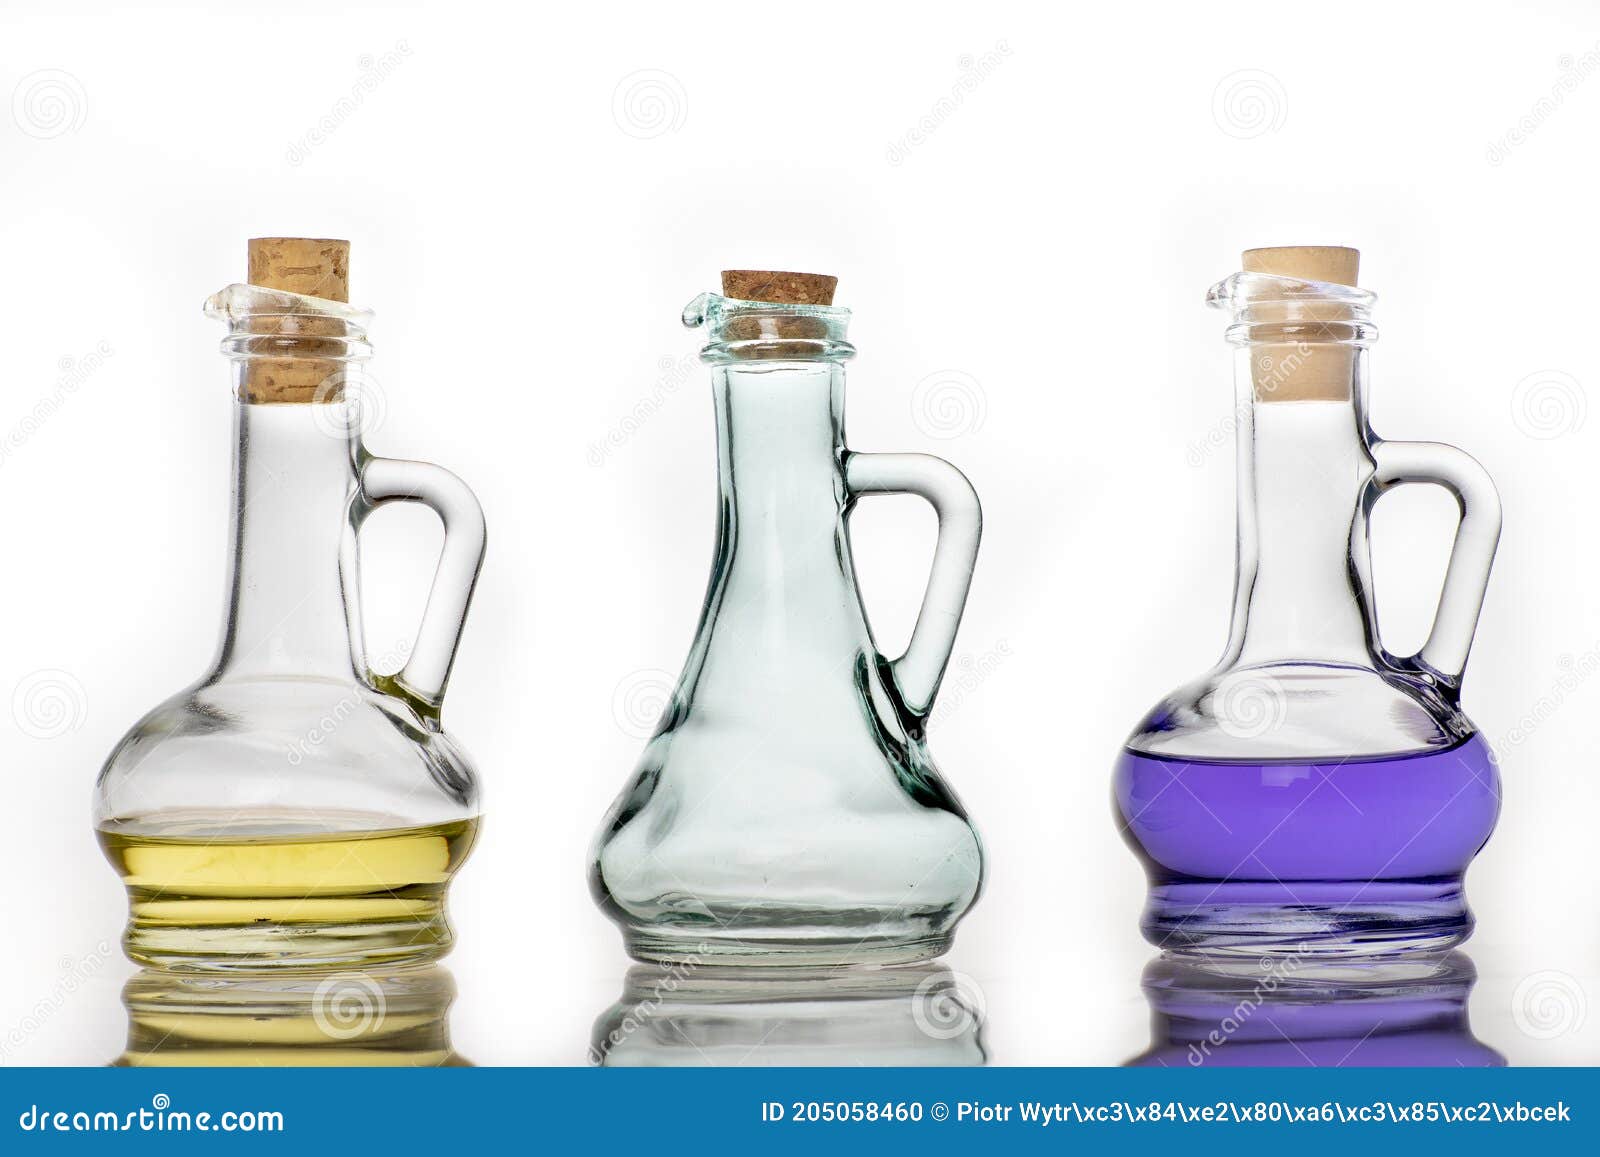 https://thumbs.dreamstime.com/z/botellas-de-vidrio-para-almacenar-aceite-cocina-contenedor-utilizado-en-la-del-hogar-fondo-claro-205058460.jpg